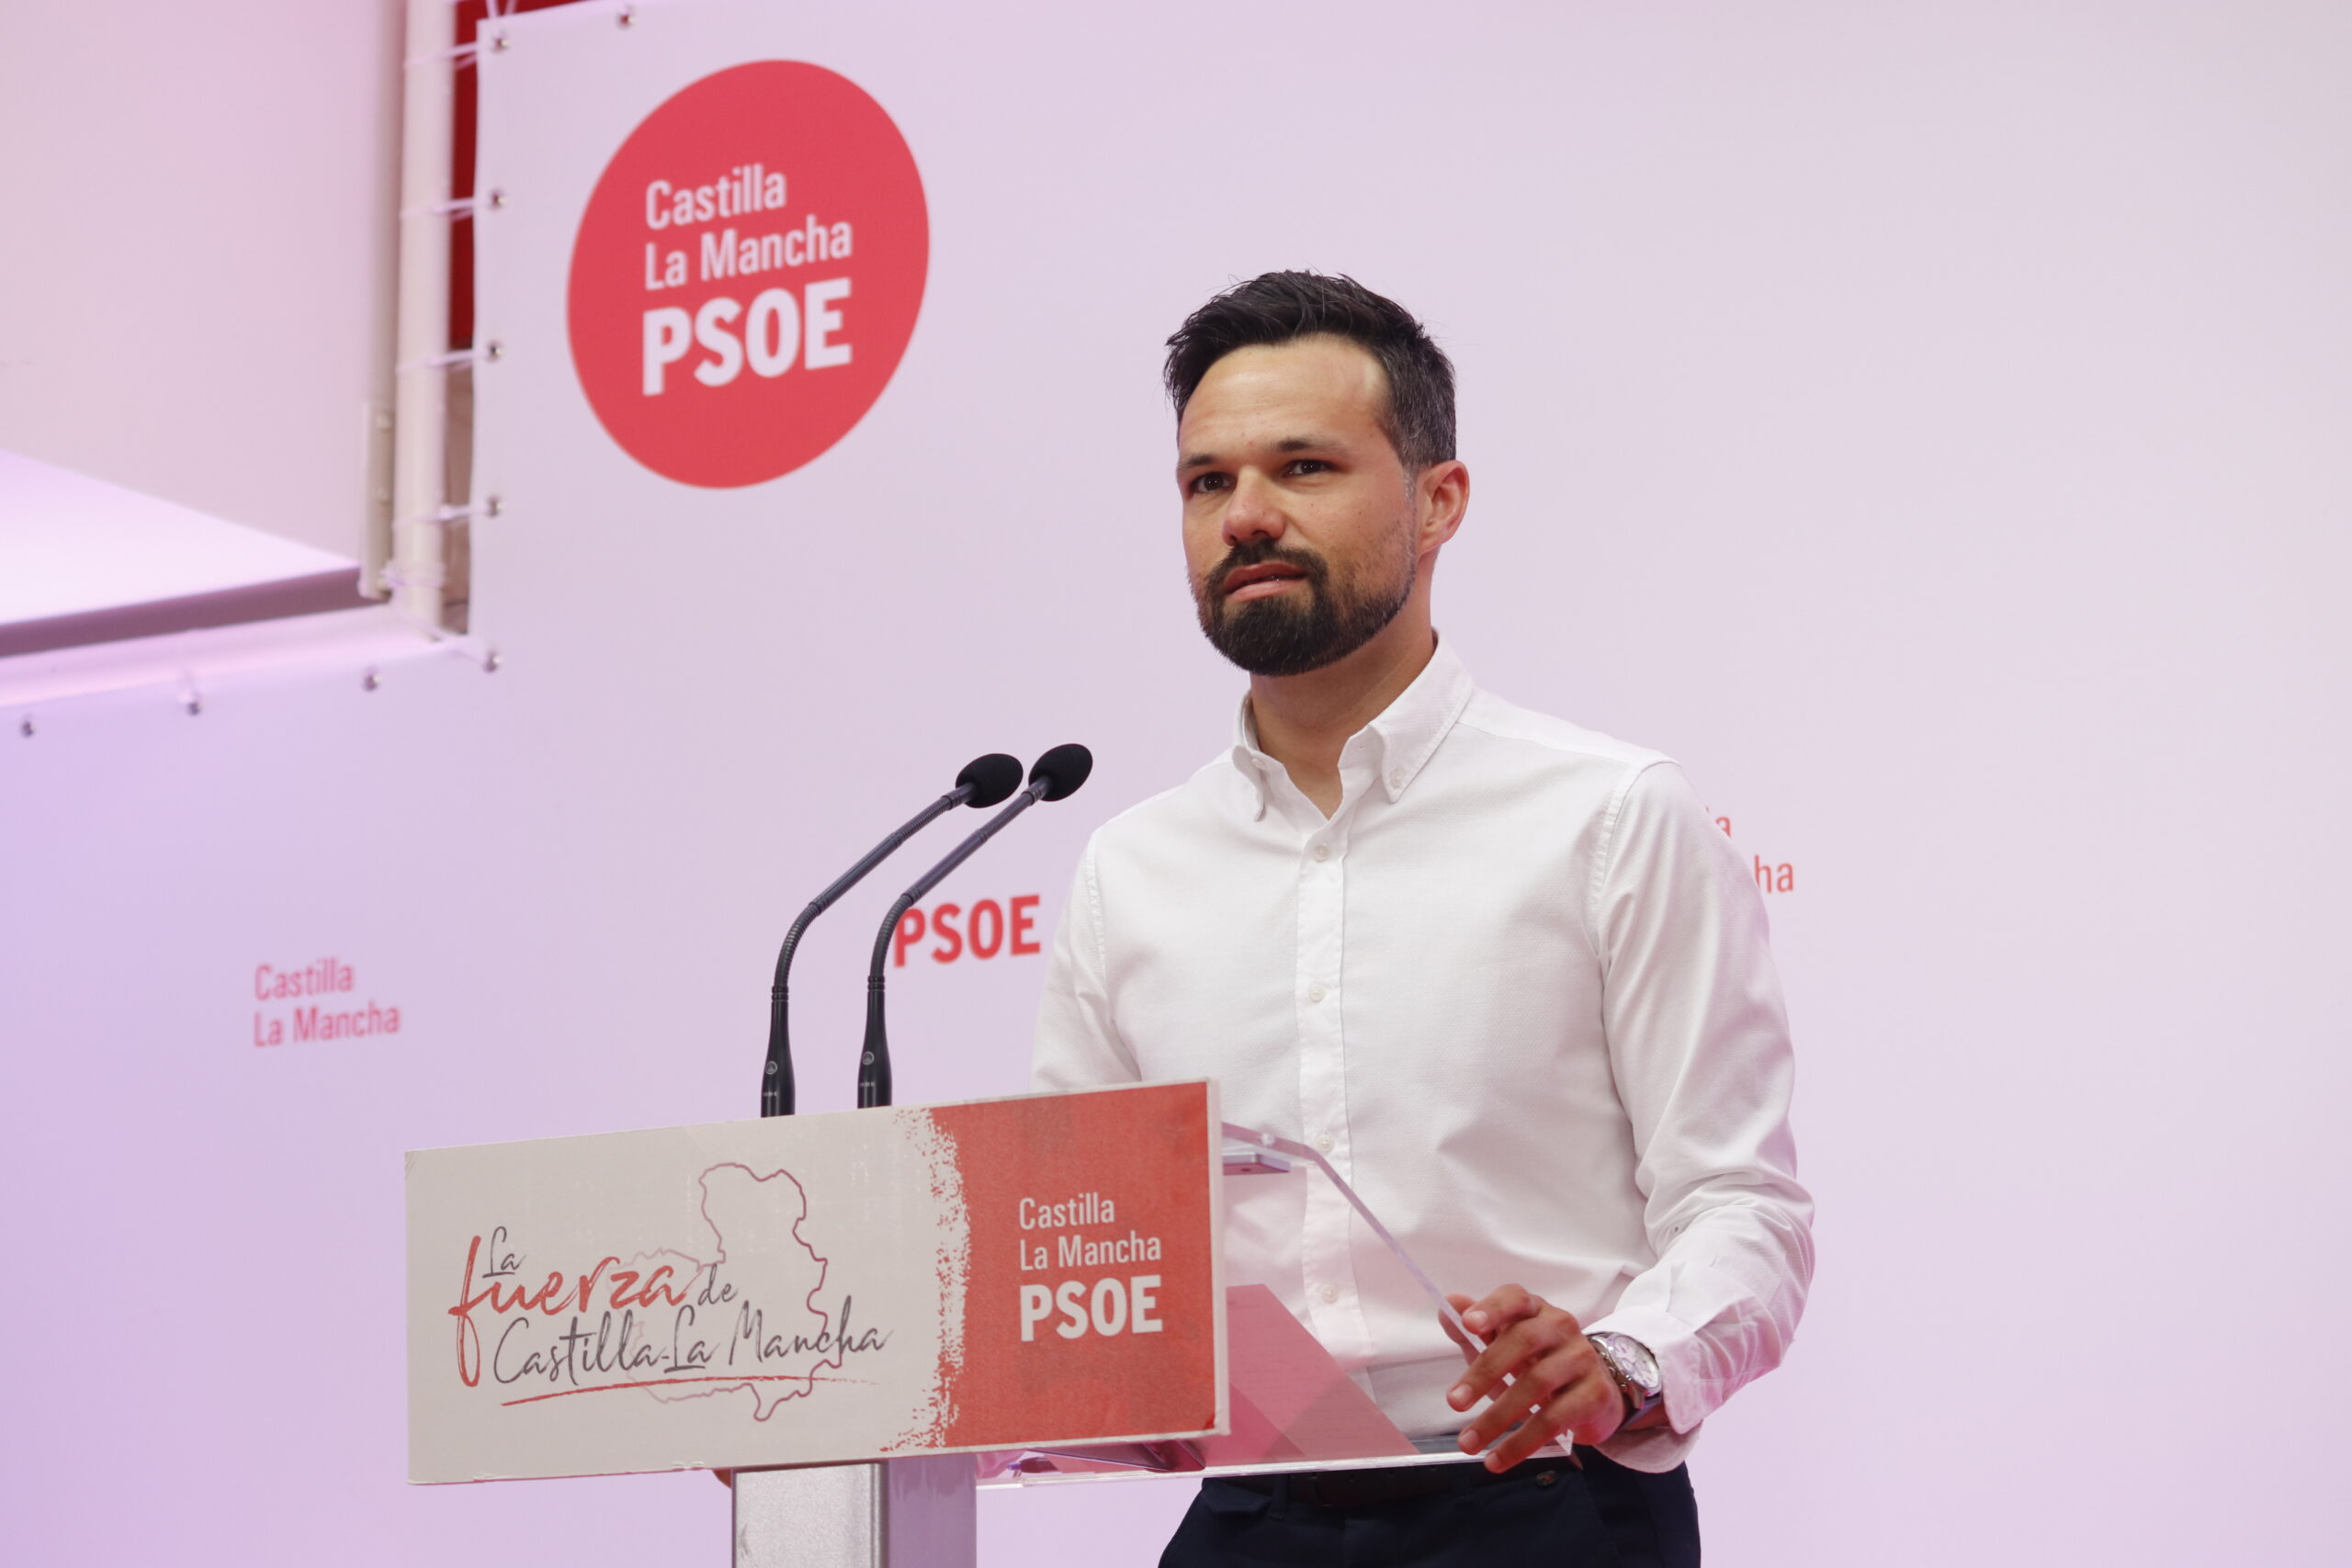 Zamora destaca el “liderazgo claro” de Page frente a la falta de credibilidad de Núñez